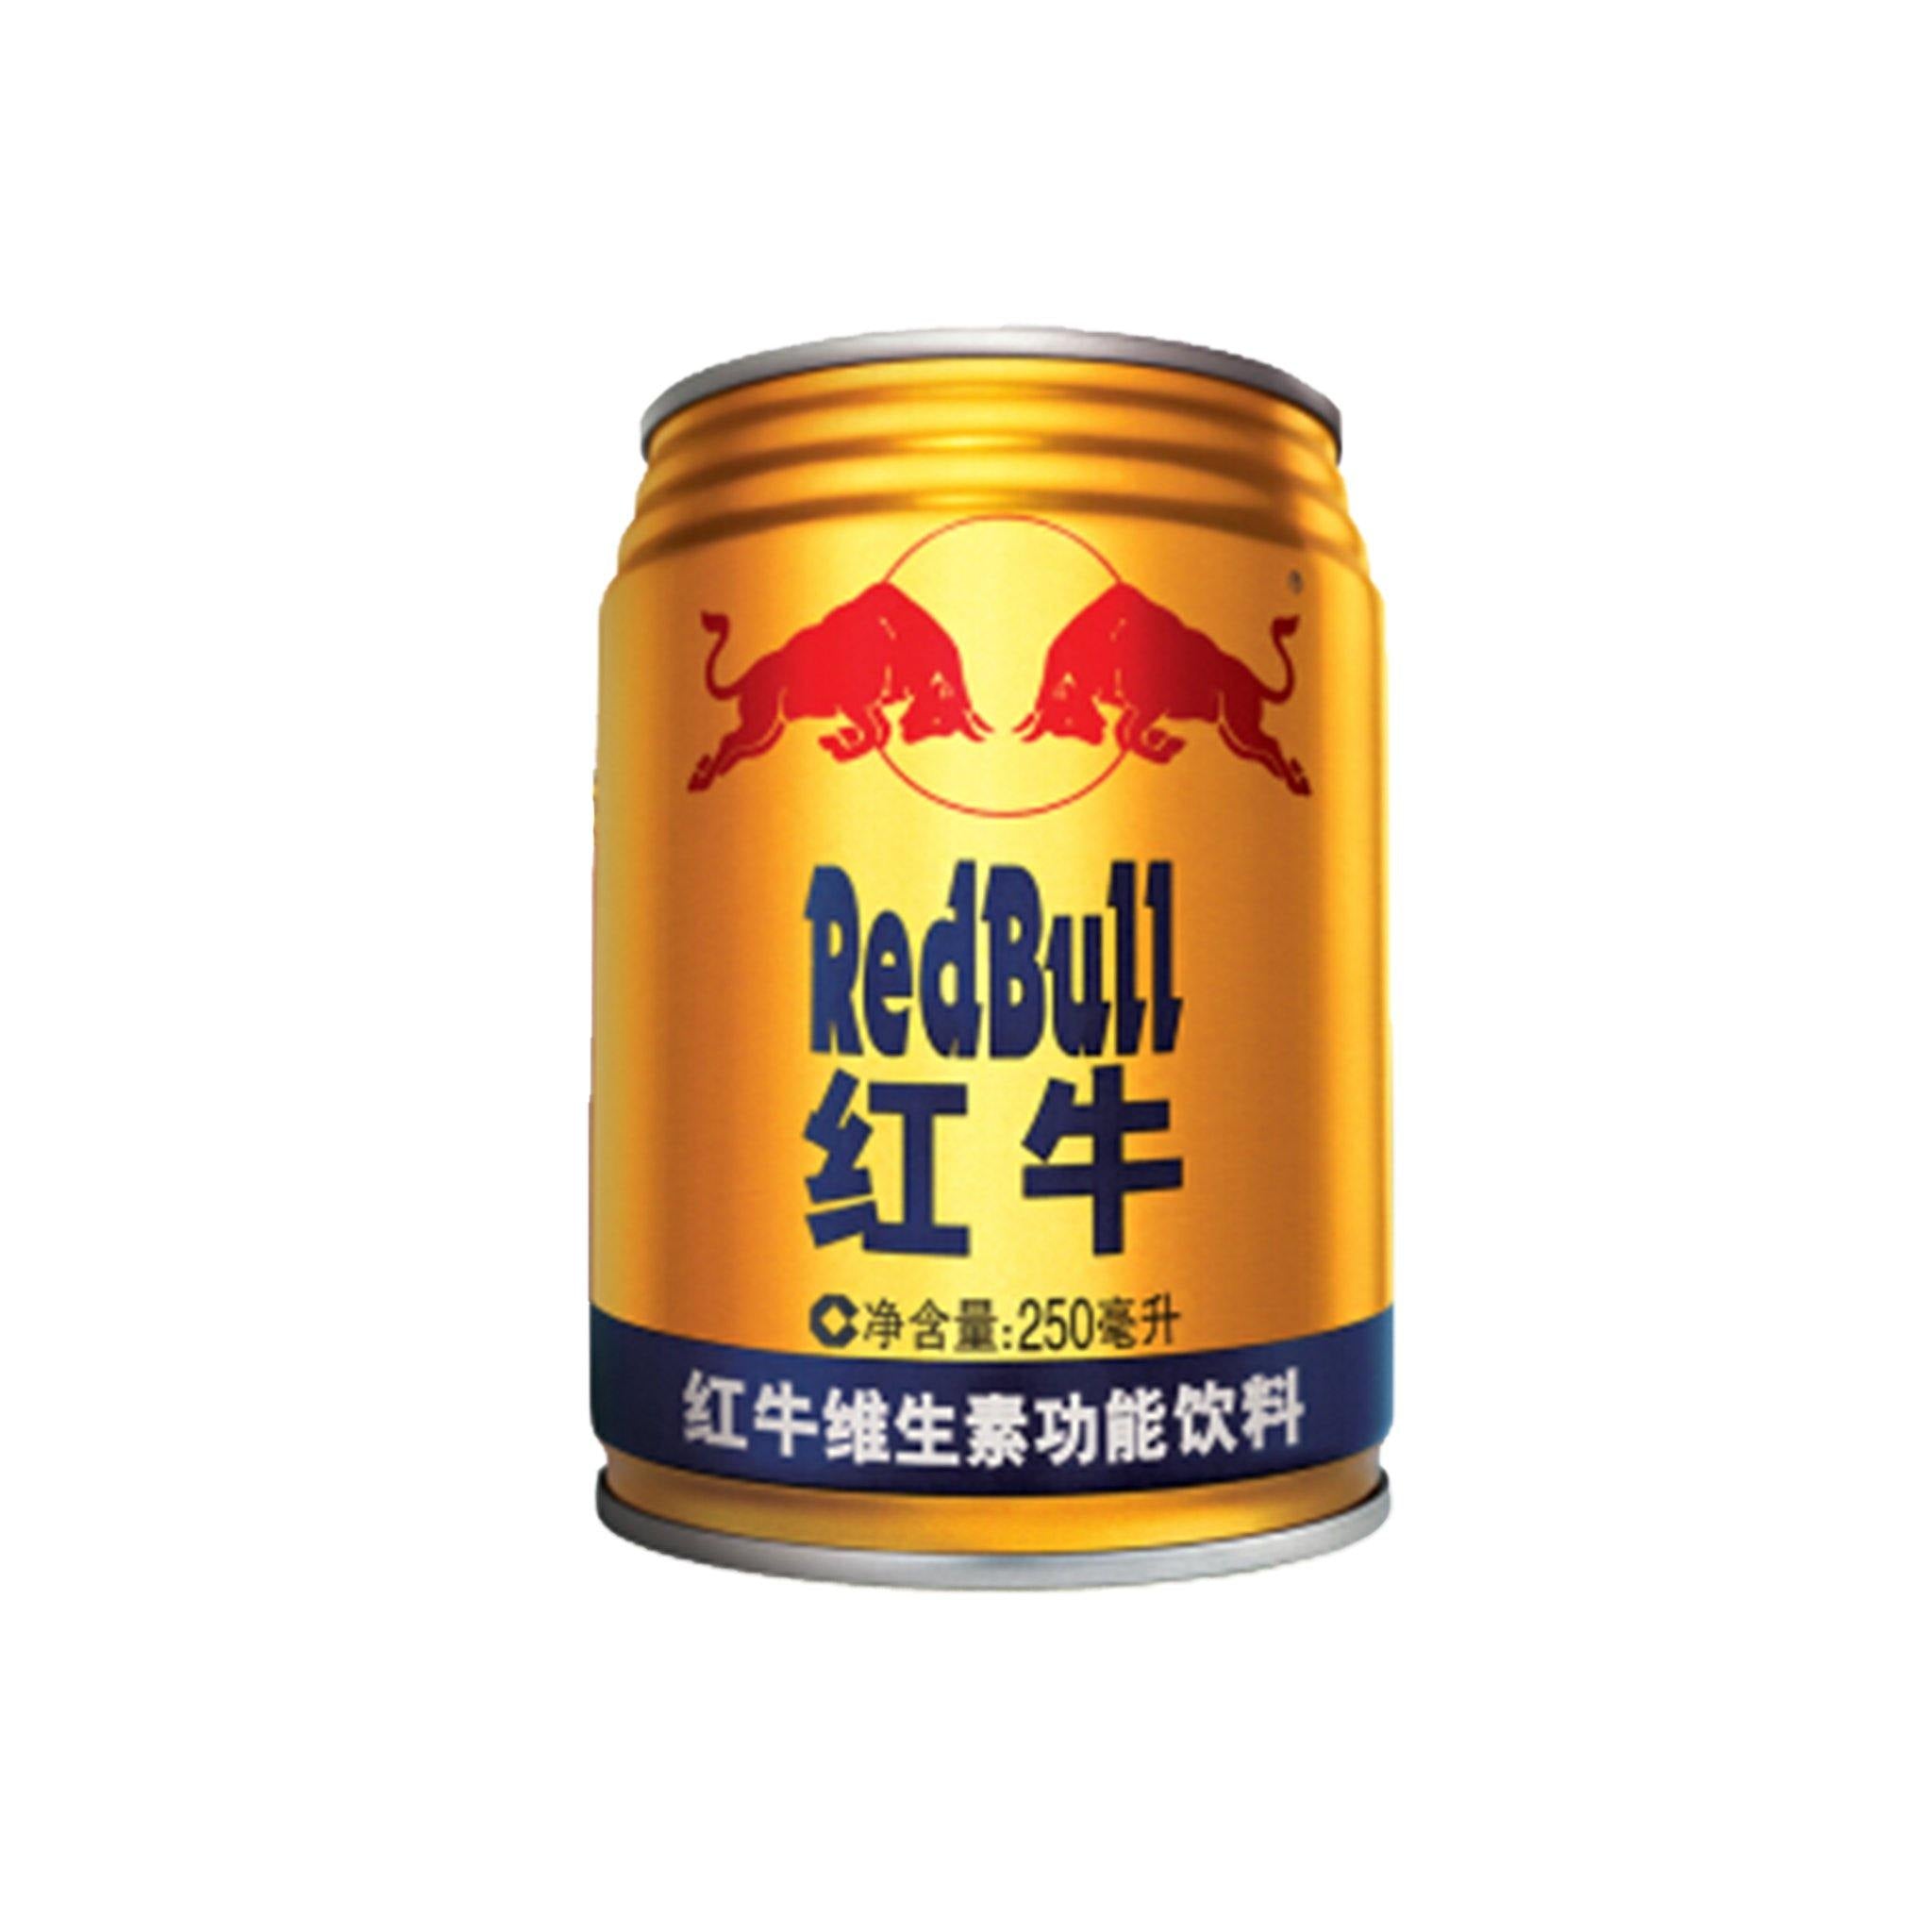 Red Bull - China - Sweet Exotics